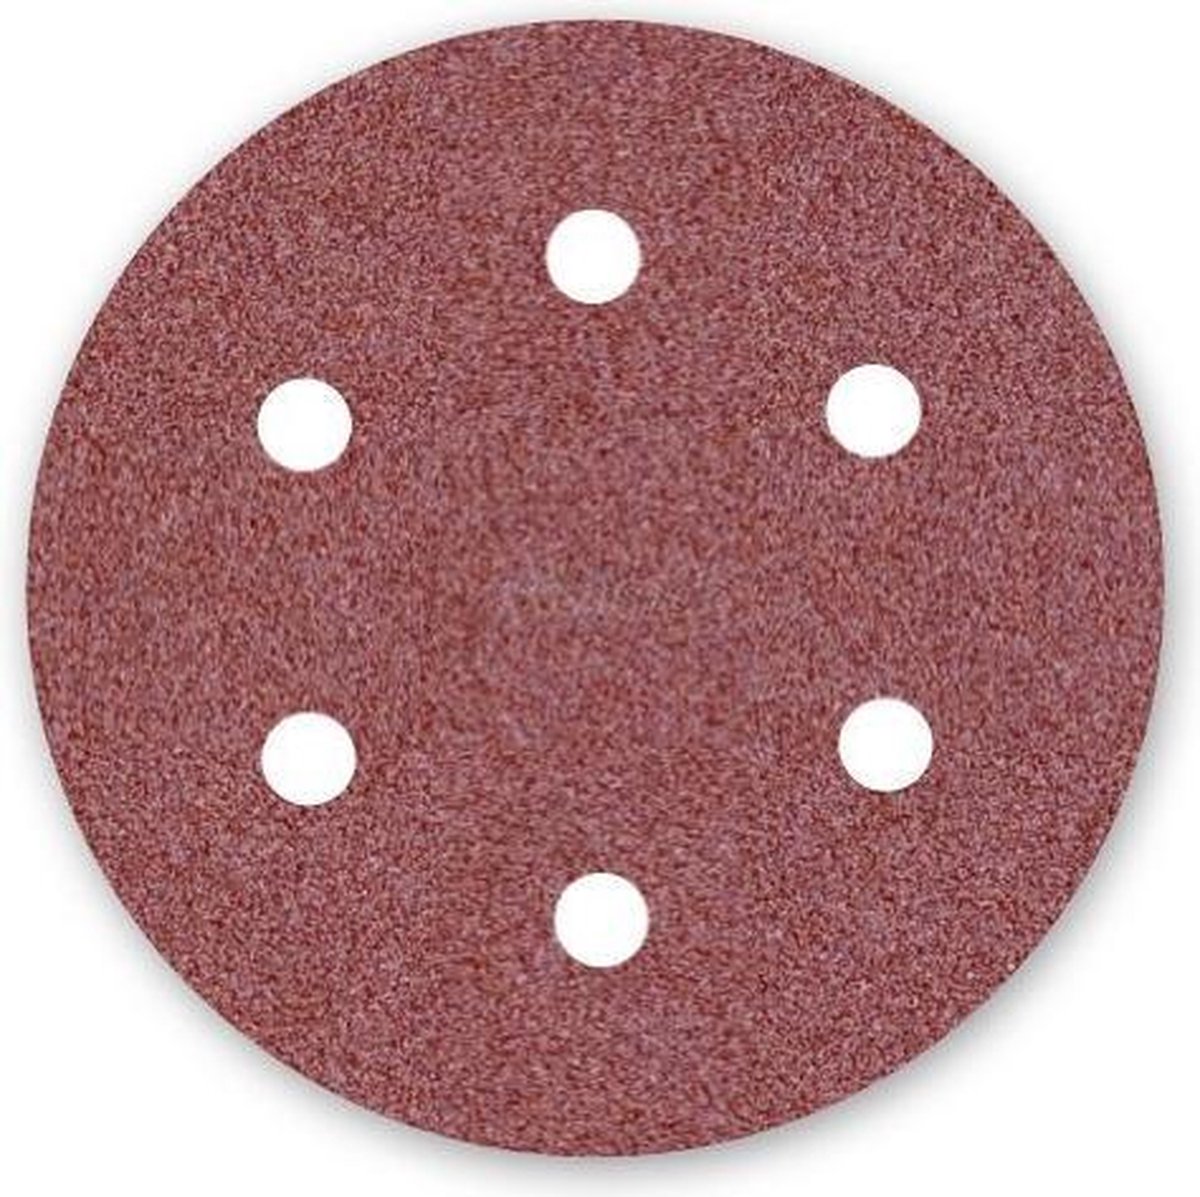 Dronco sanding disc sander - ø 150 mm - grain 240-6 hole